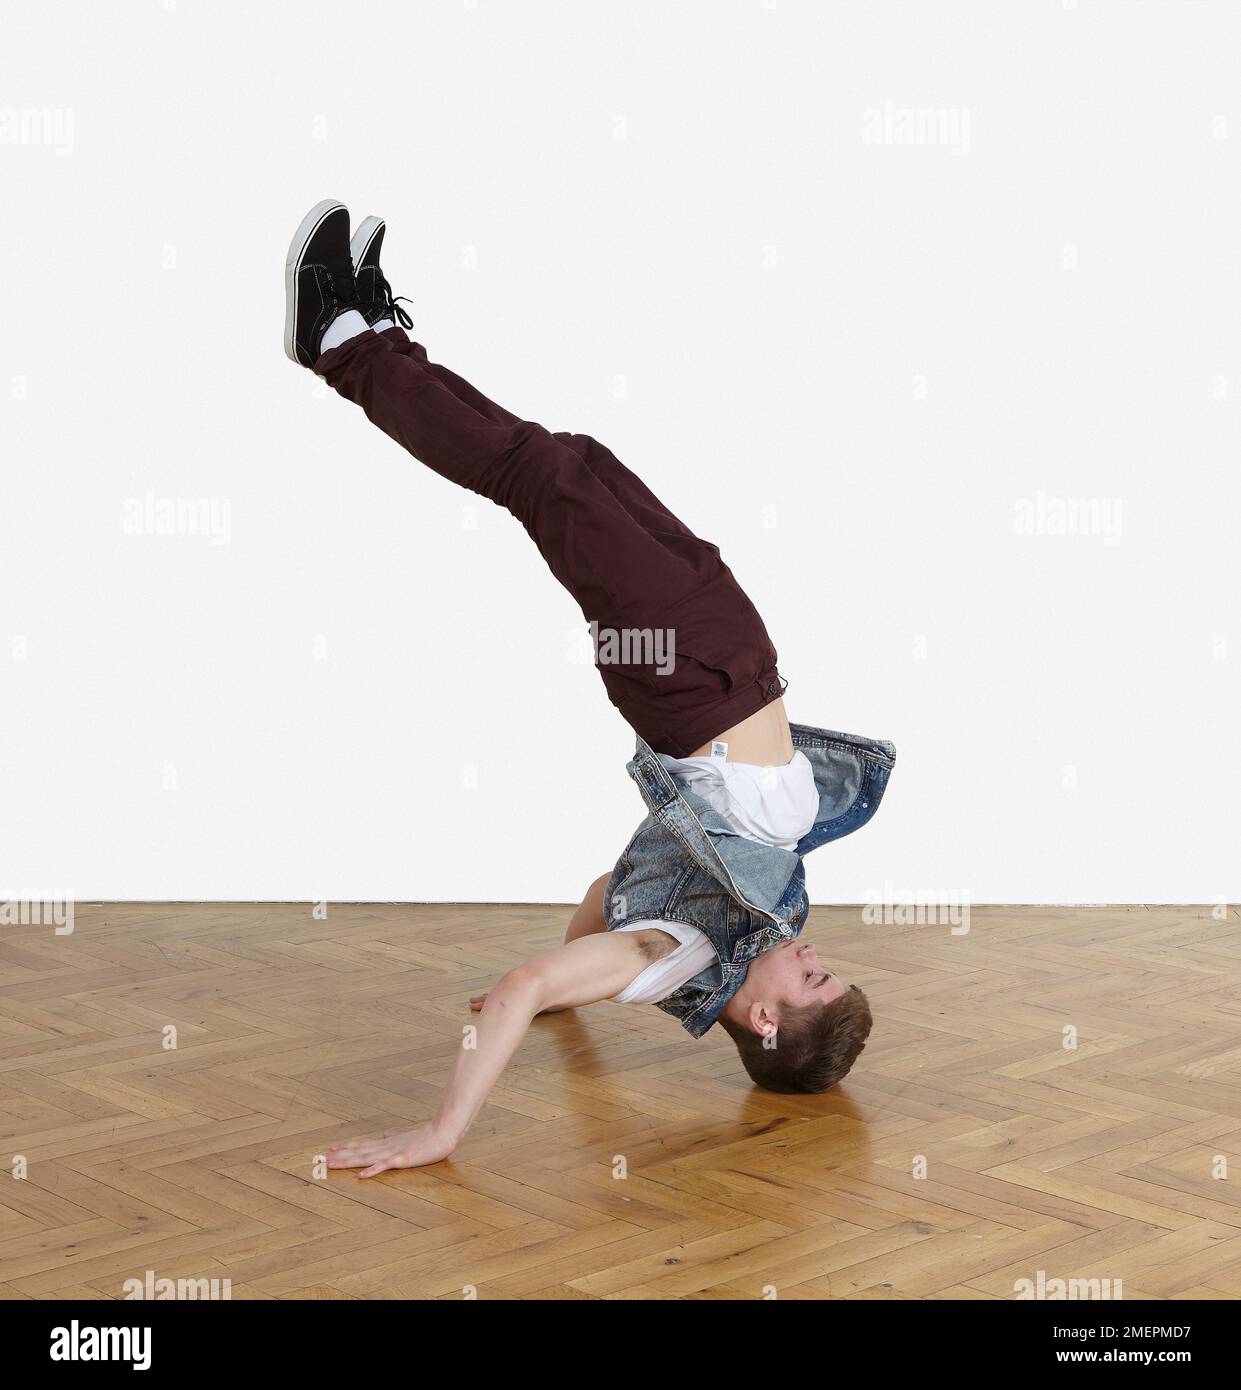 Jugendliche breakdance Moves durchführen Stockfoto